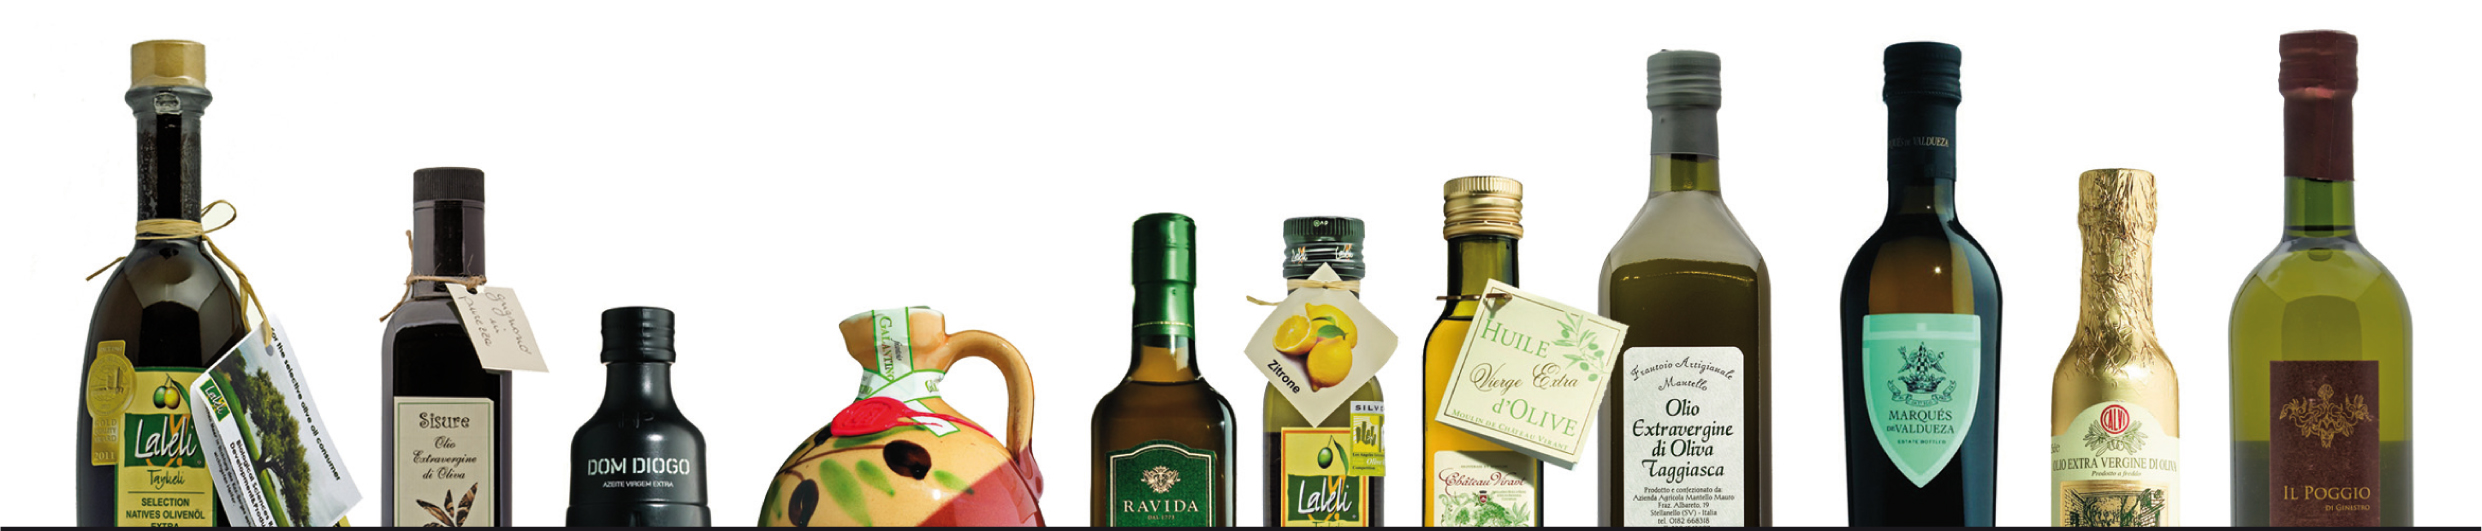 Darstellung der unterschiedlichsten Olivenöle von Olio-Mediterraneo